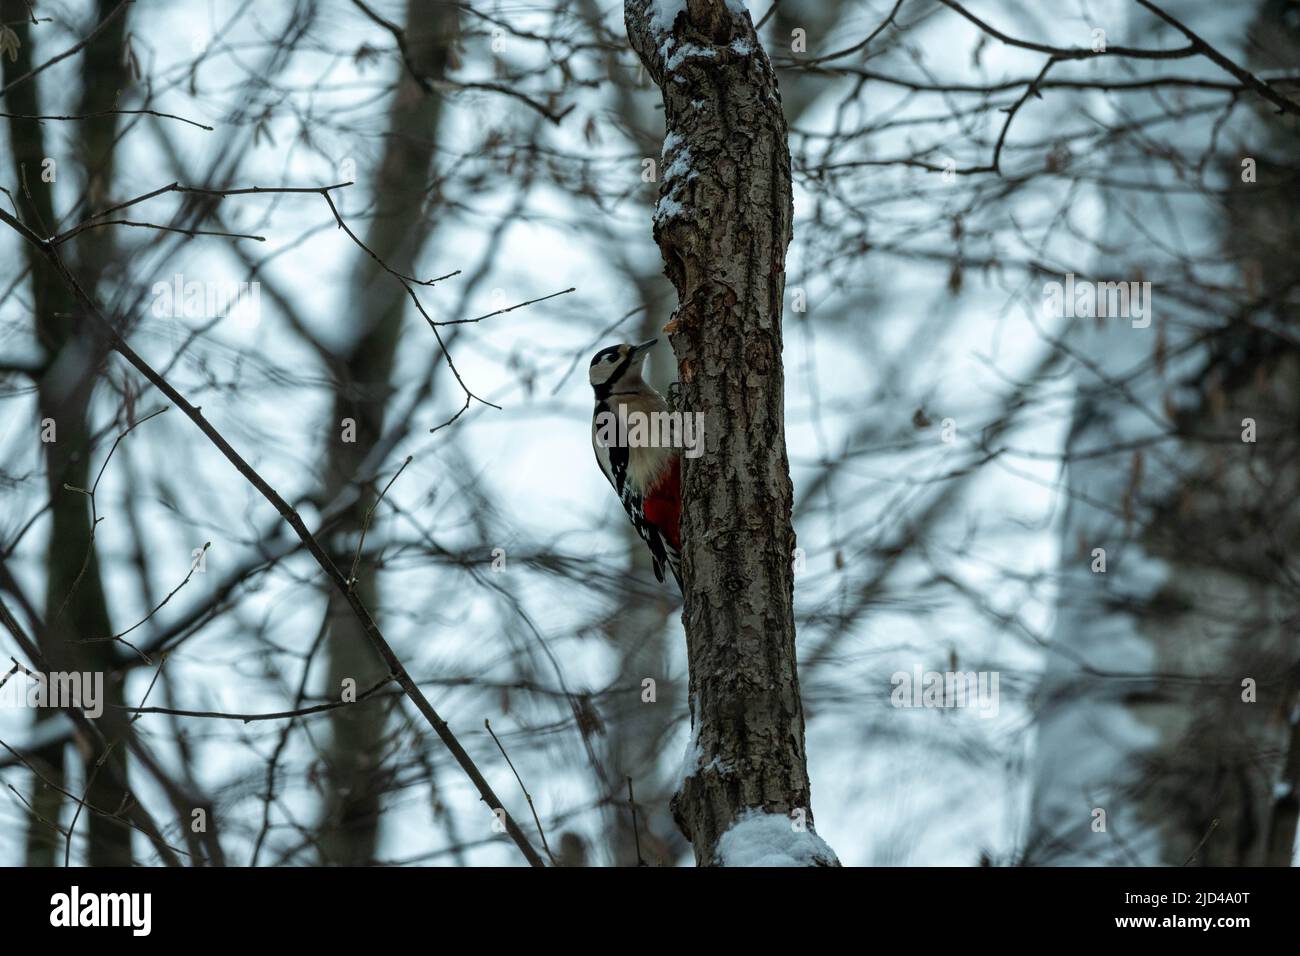 Un pic sur un tronc d'arbre dans une forêt d'hiver. Pic dans son habitat naturel. Banque D'Images